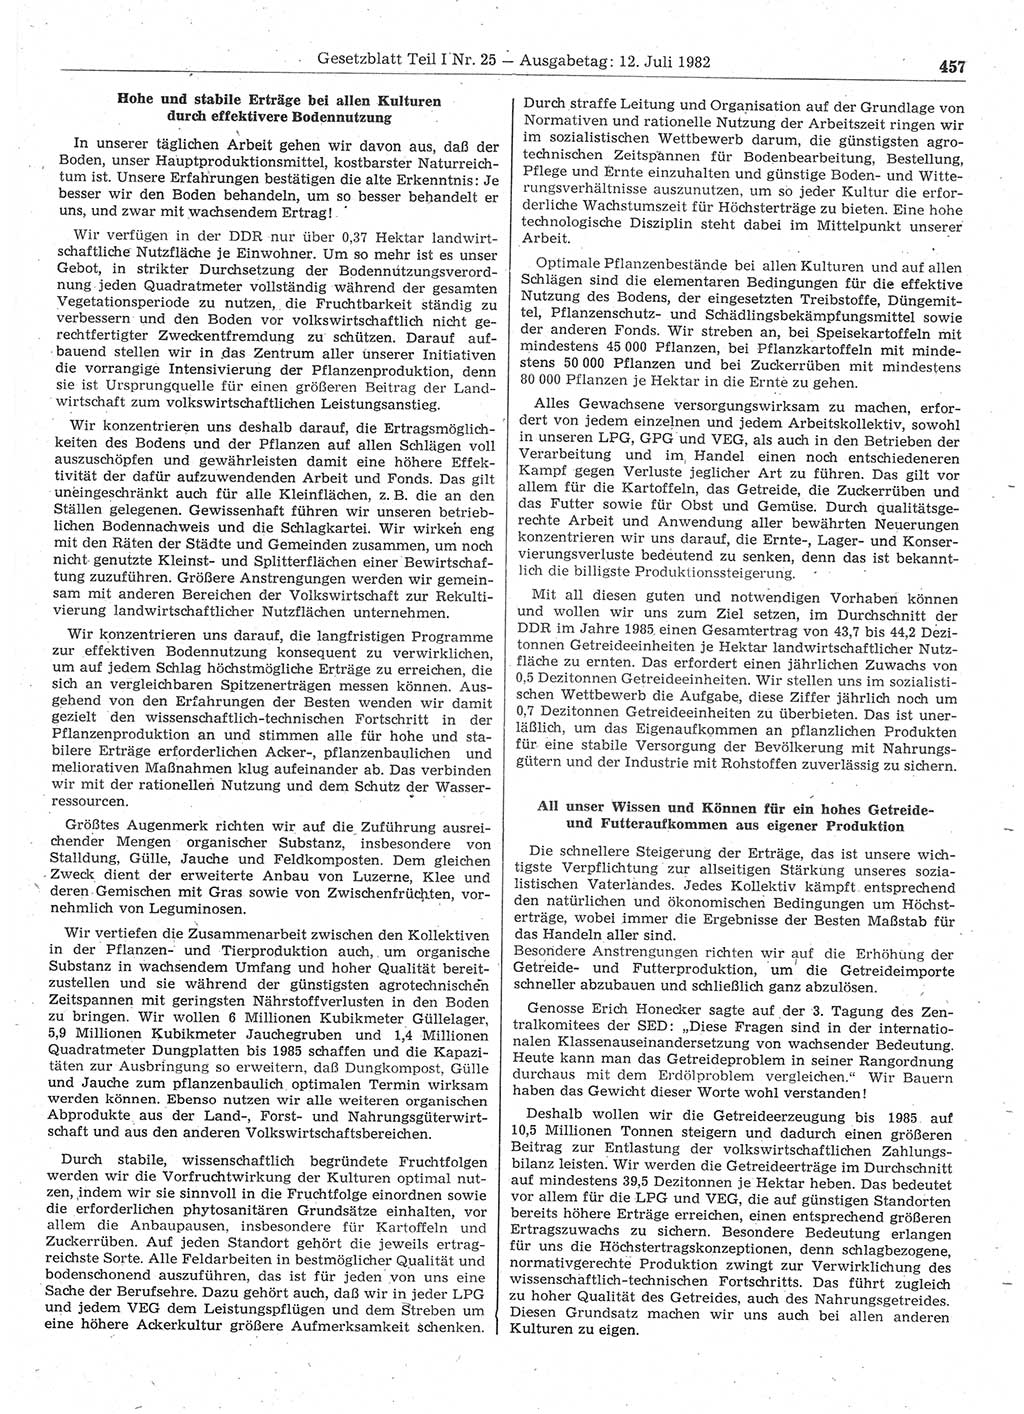 Gesetzblatt (GBl.) der Deutschen Demokratischen Republik (DDR) Teil Ⅰ 1982, Seite 457 (GBl. DDR Ⅰ 1982, S. 457)